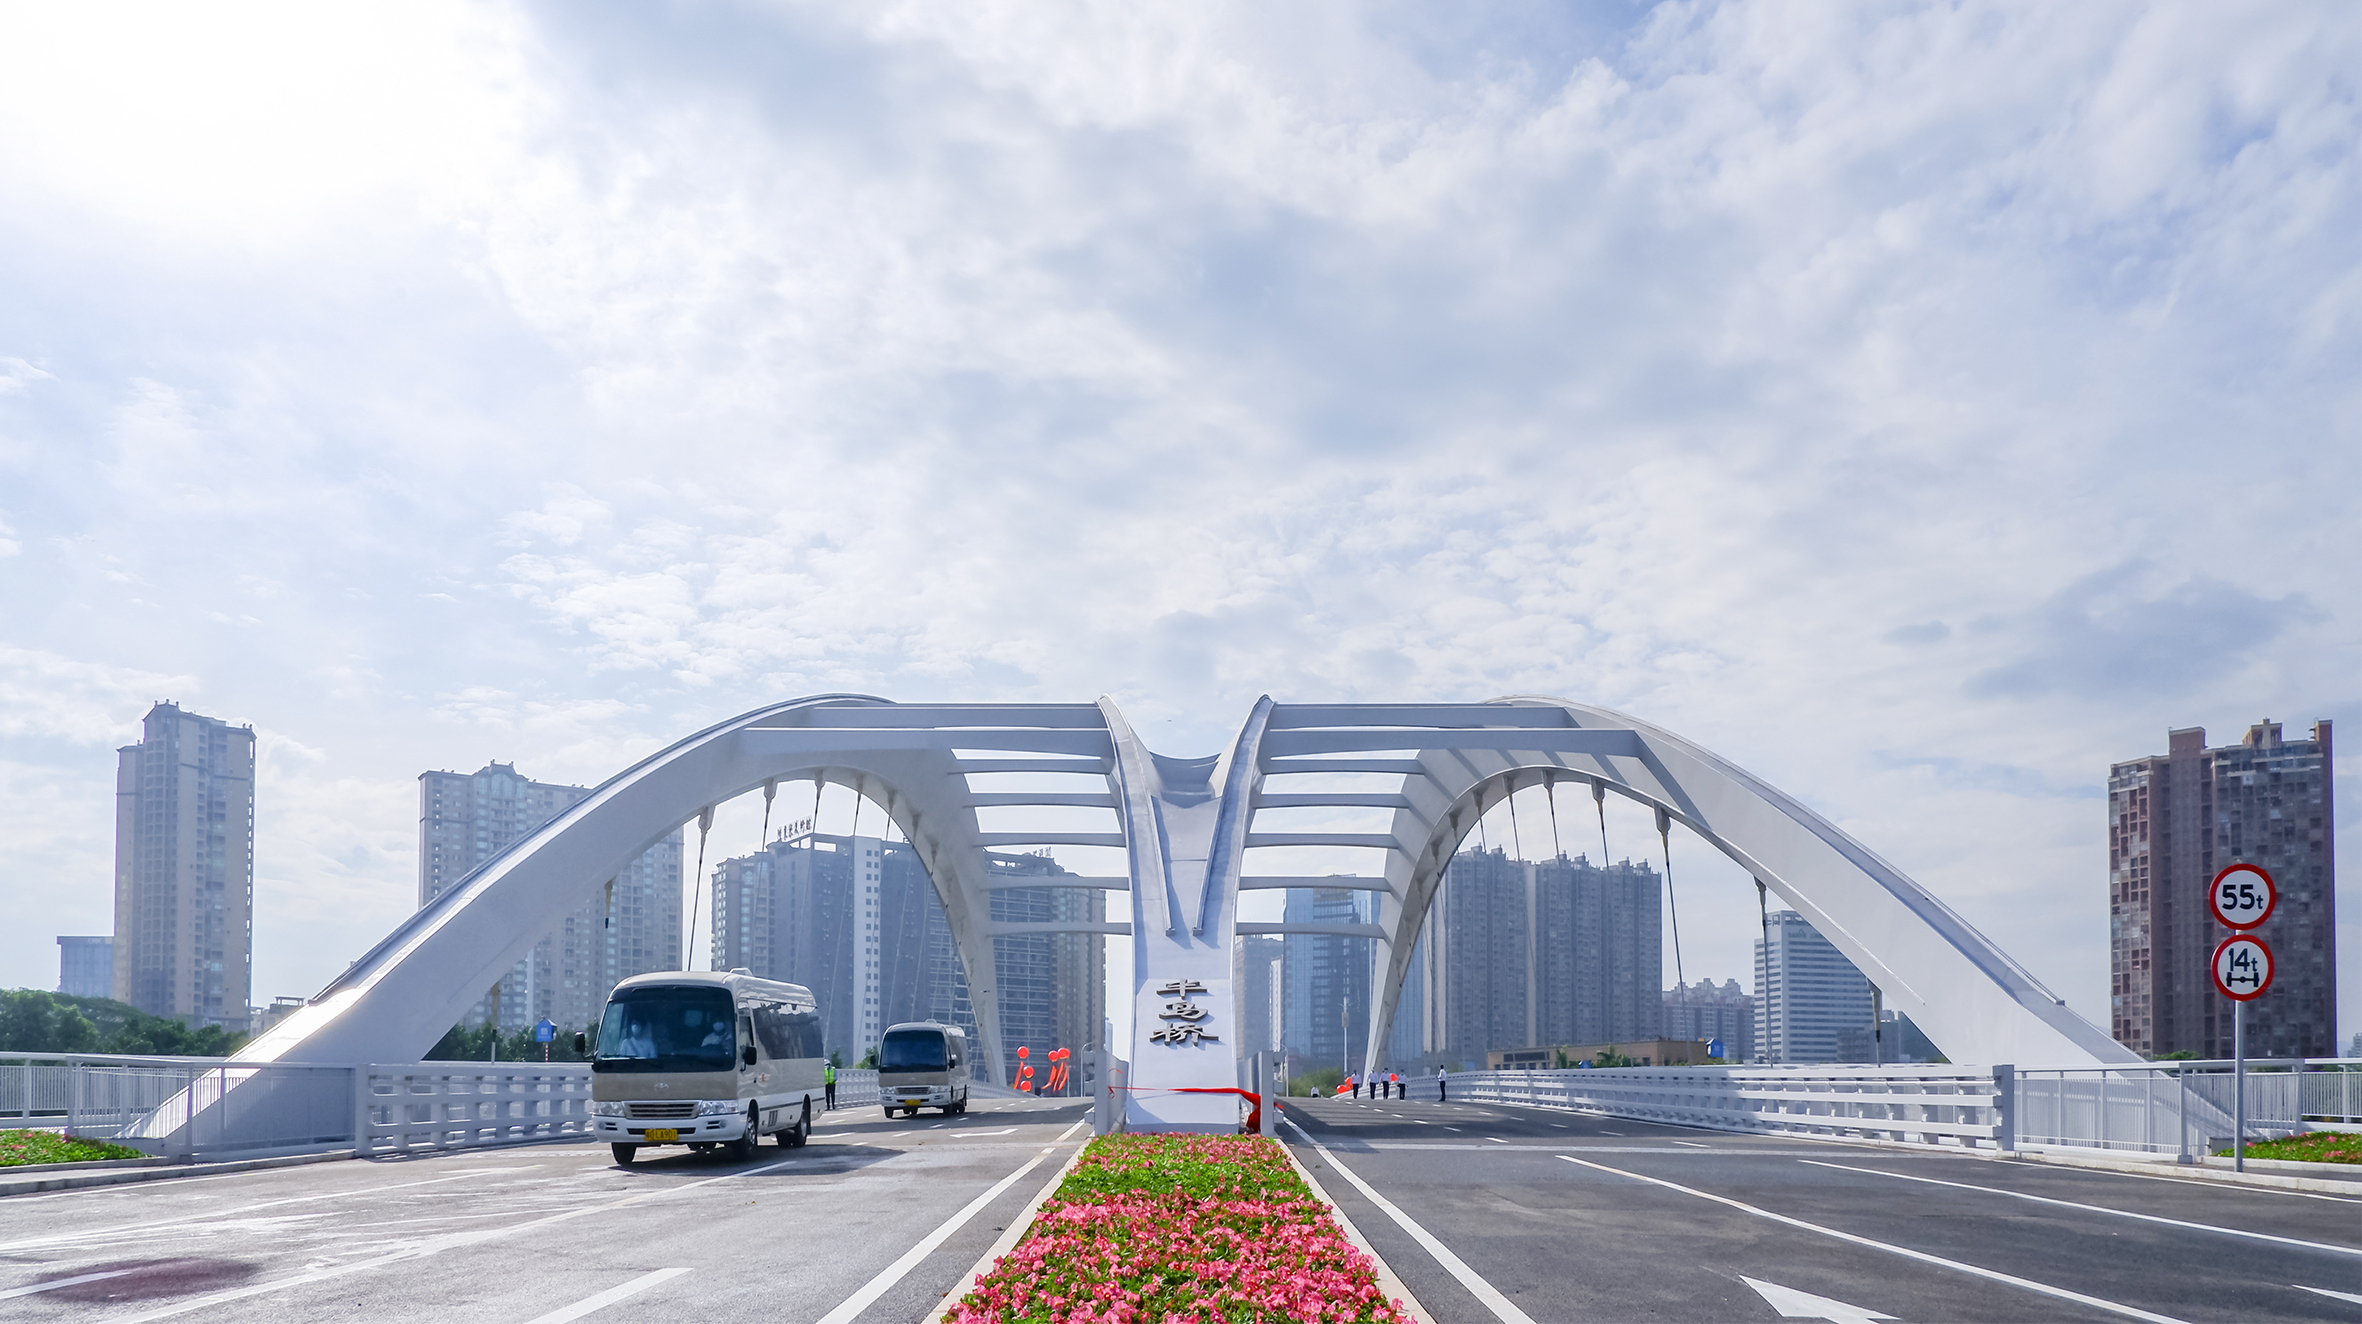 惠州最大跨径桥梁通车,为全市首座全钢结构桥梁惠阳半岛桥及连接路